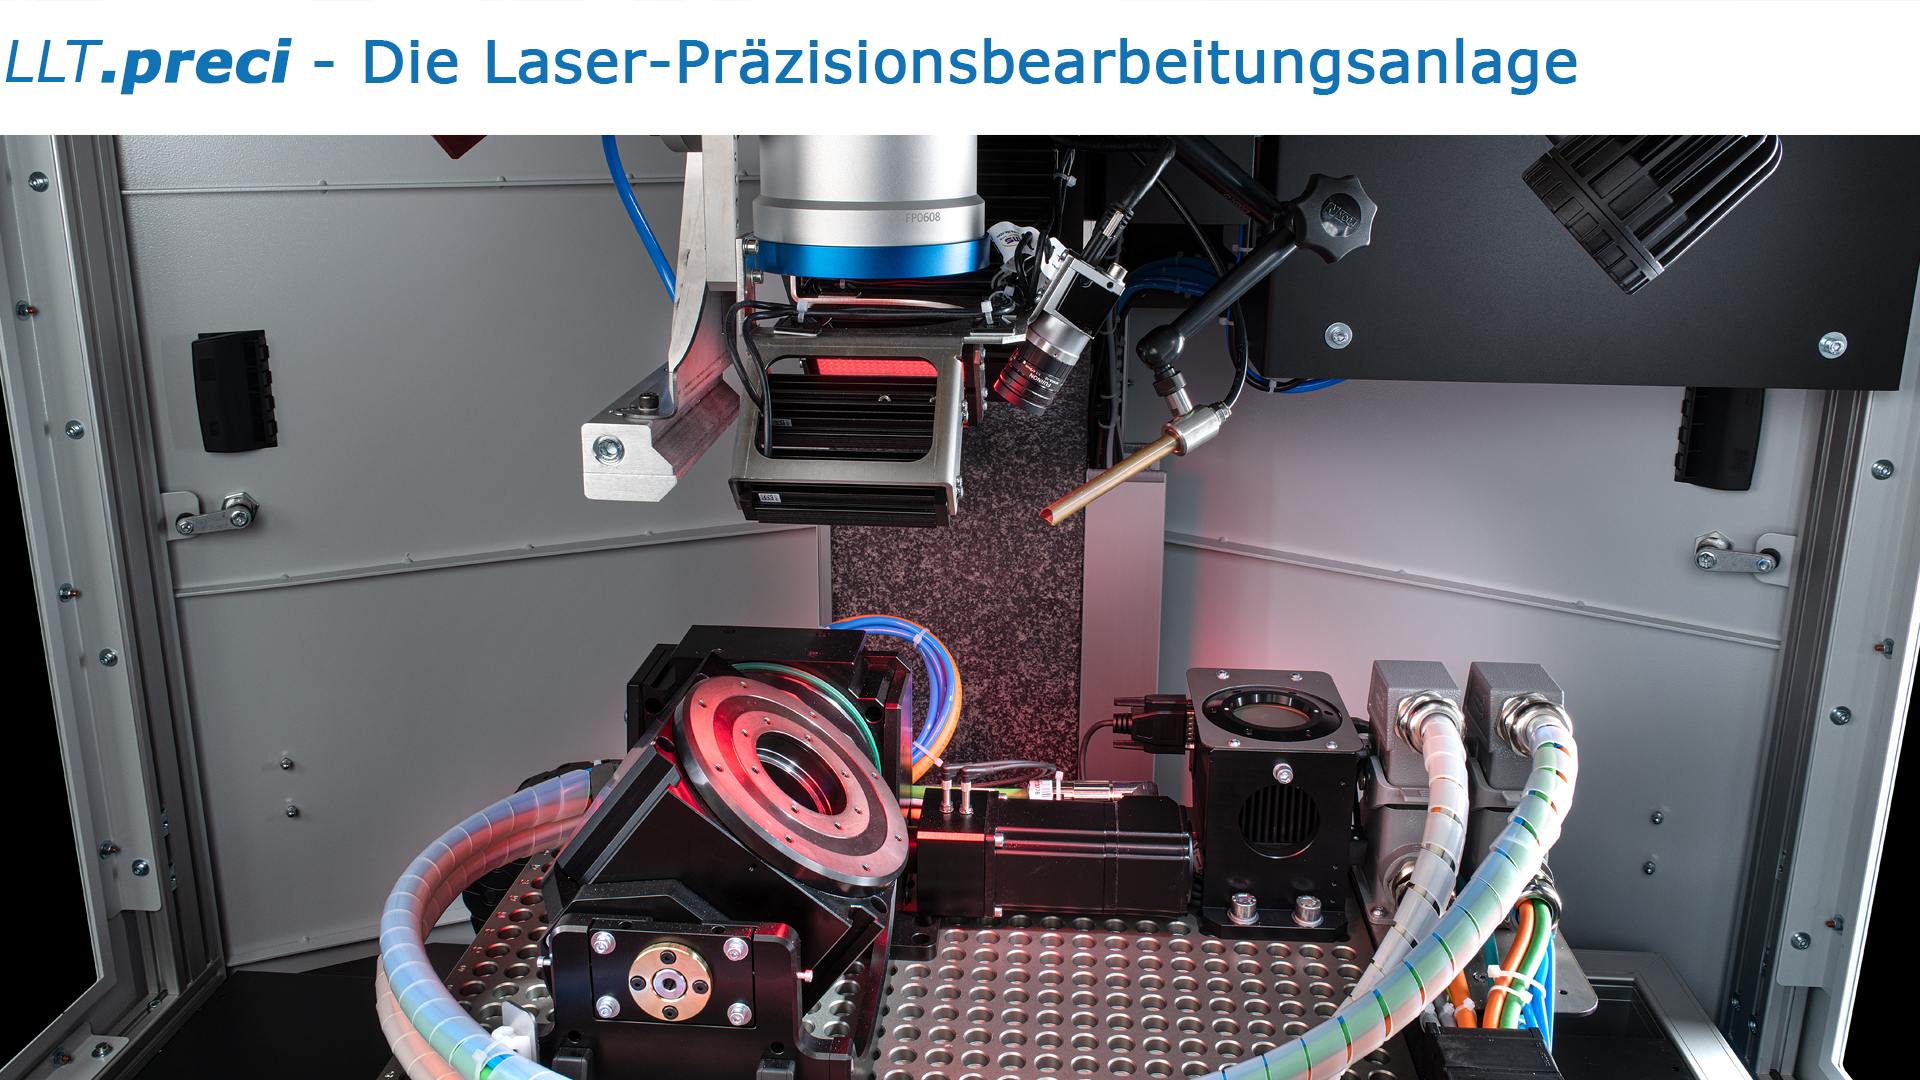 𝘓𝘓𝘛.𝙥𝙧𝙚𝙘𝙞 - Die Laser-Präzisionsbearbeitungsanlage